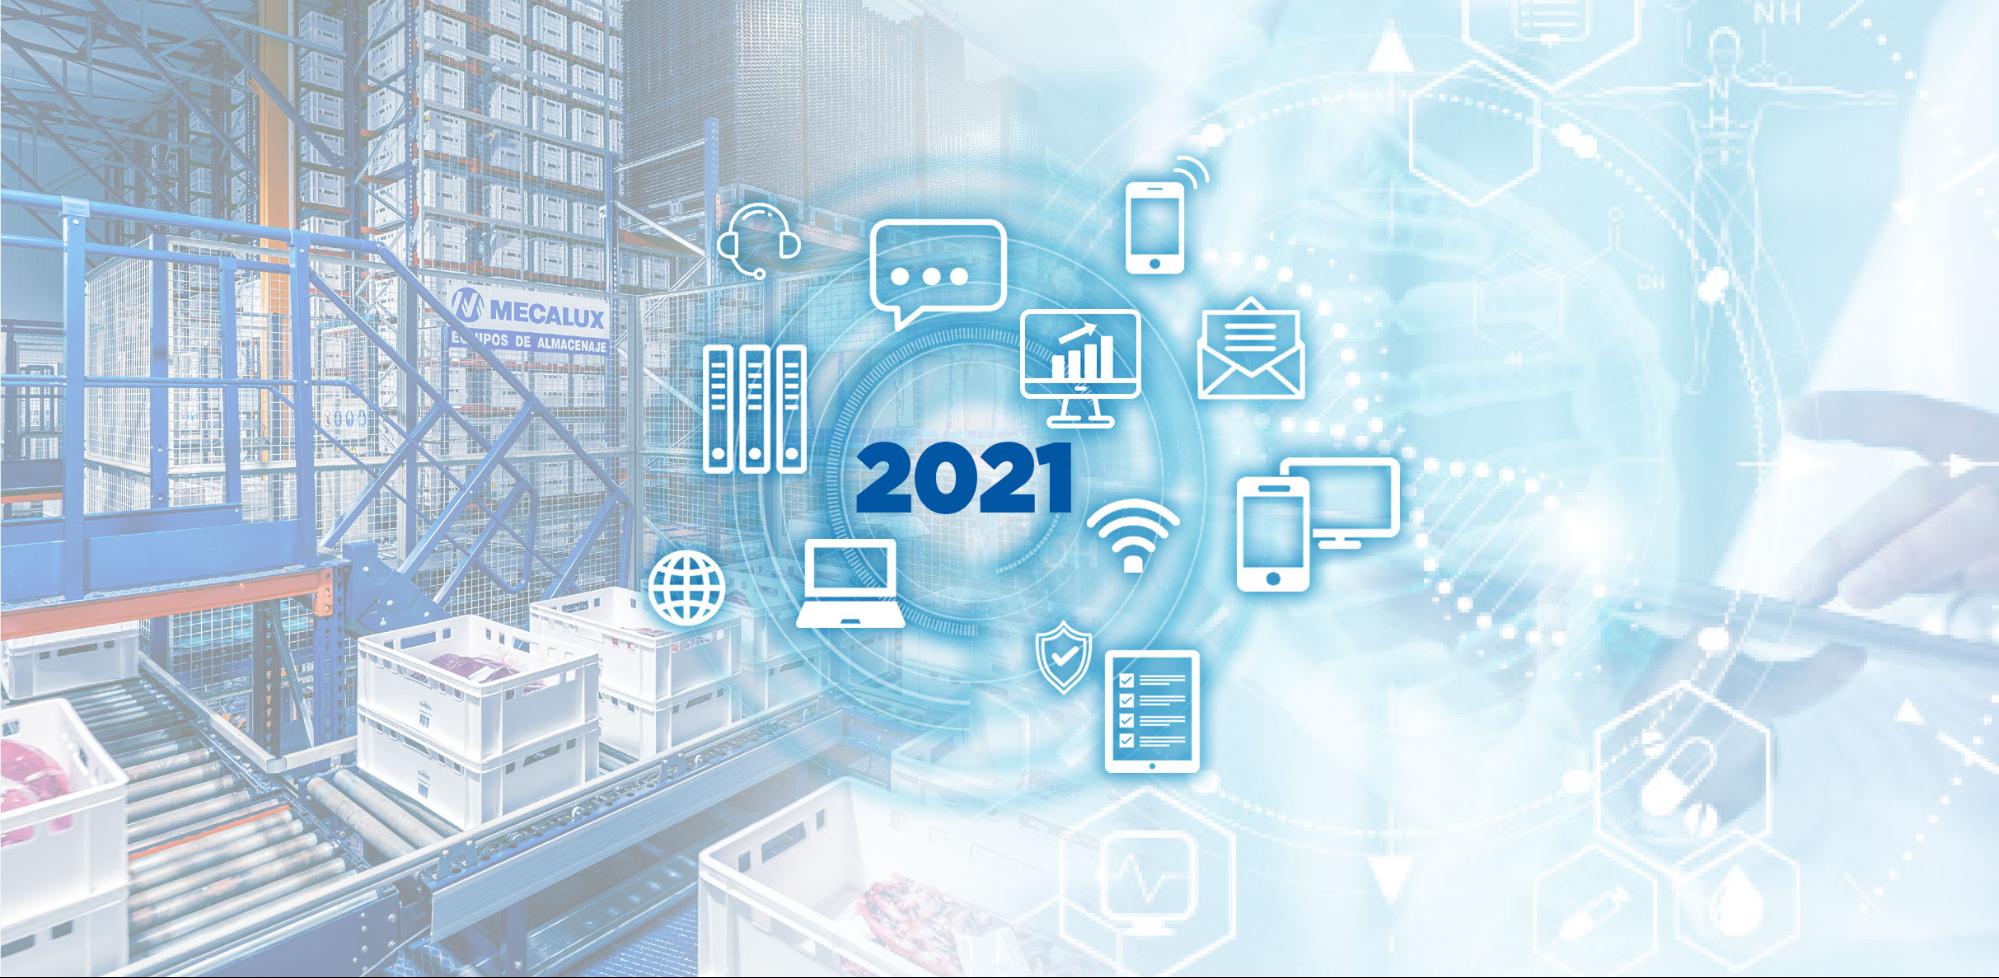 Digitalization will be a logistics trend in 2021